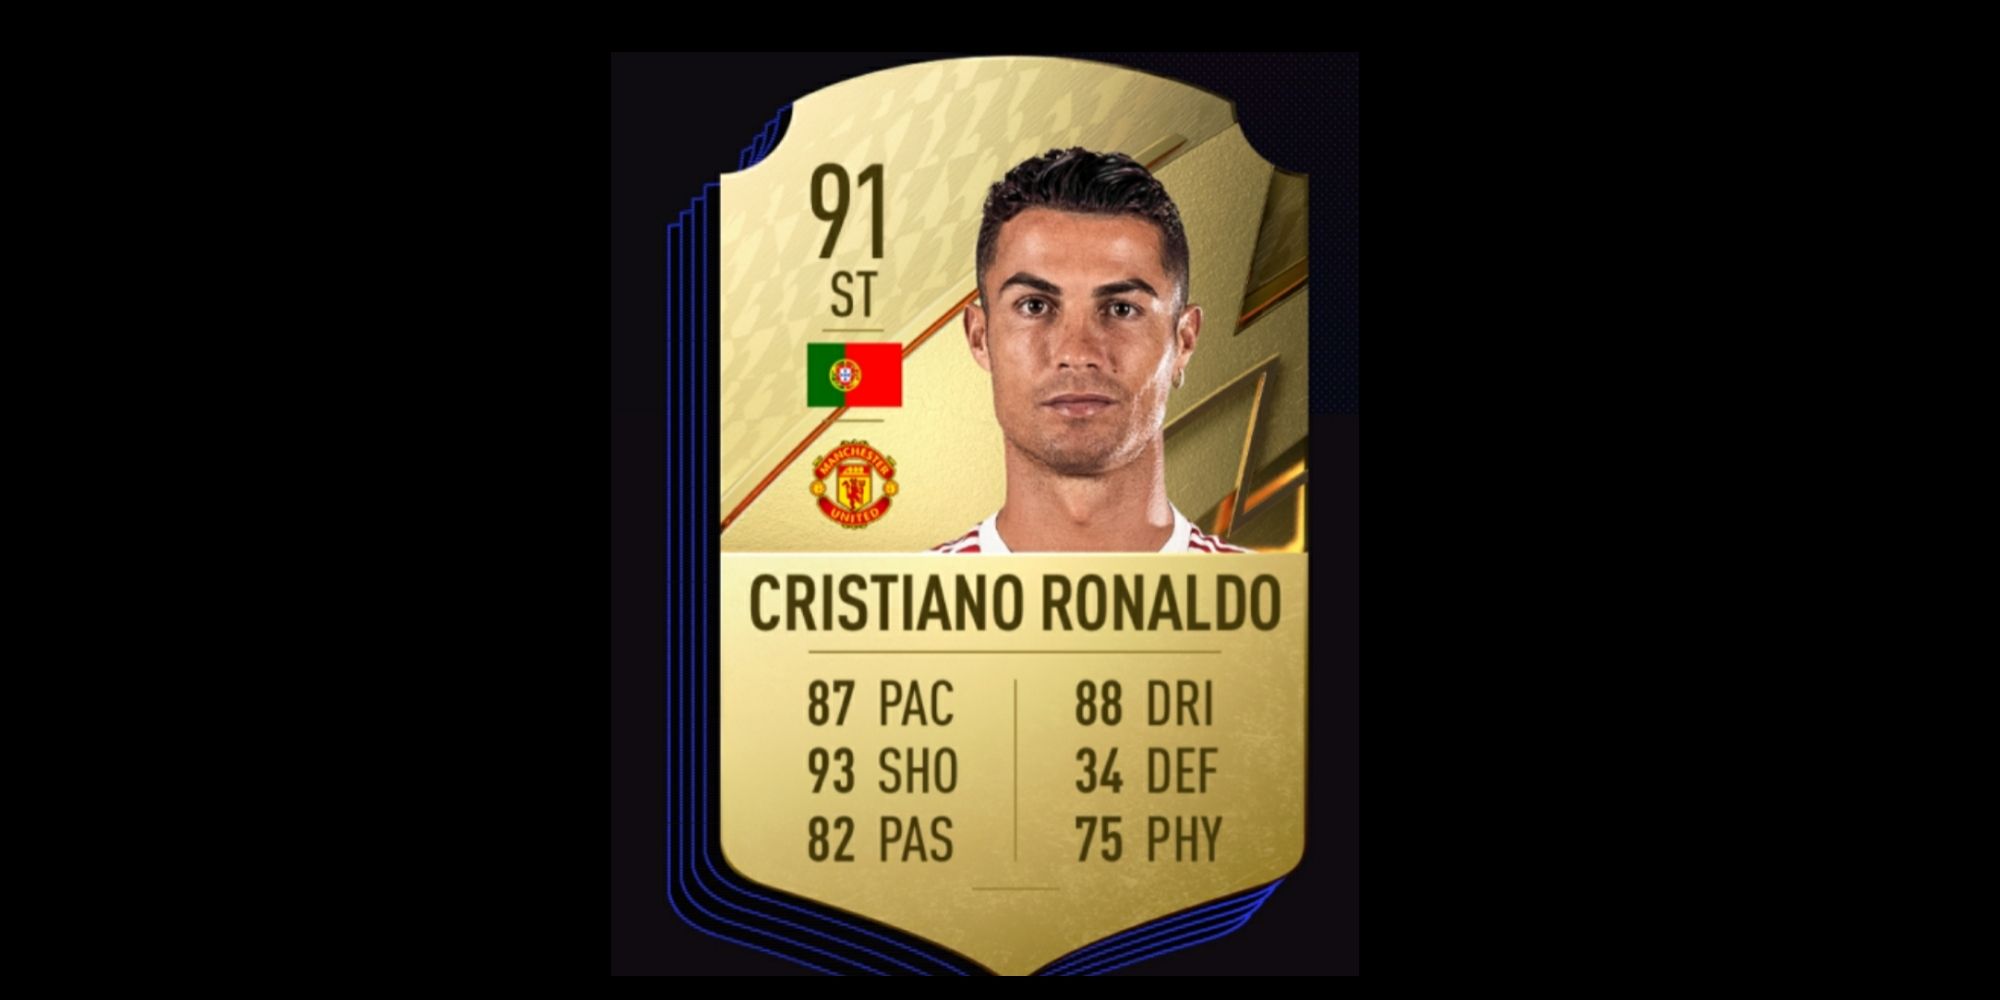 Cristiano Ronaldo card in FIFA 22